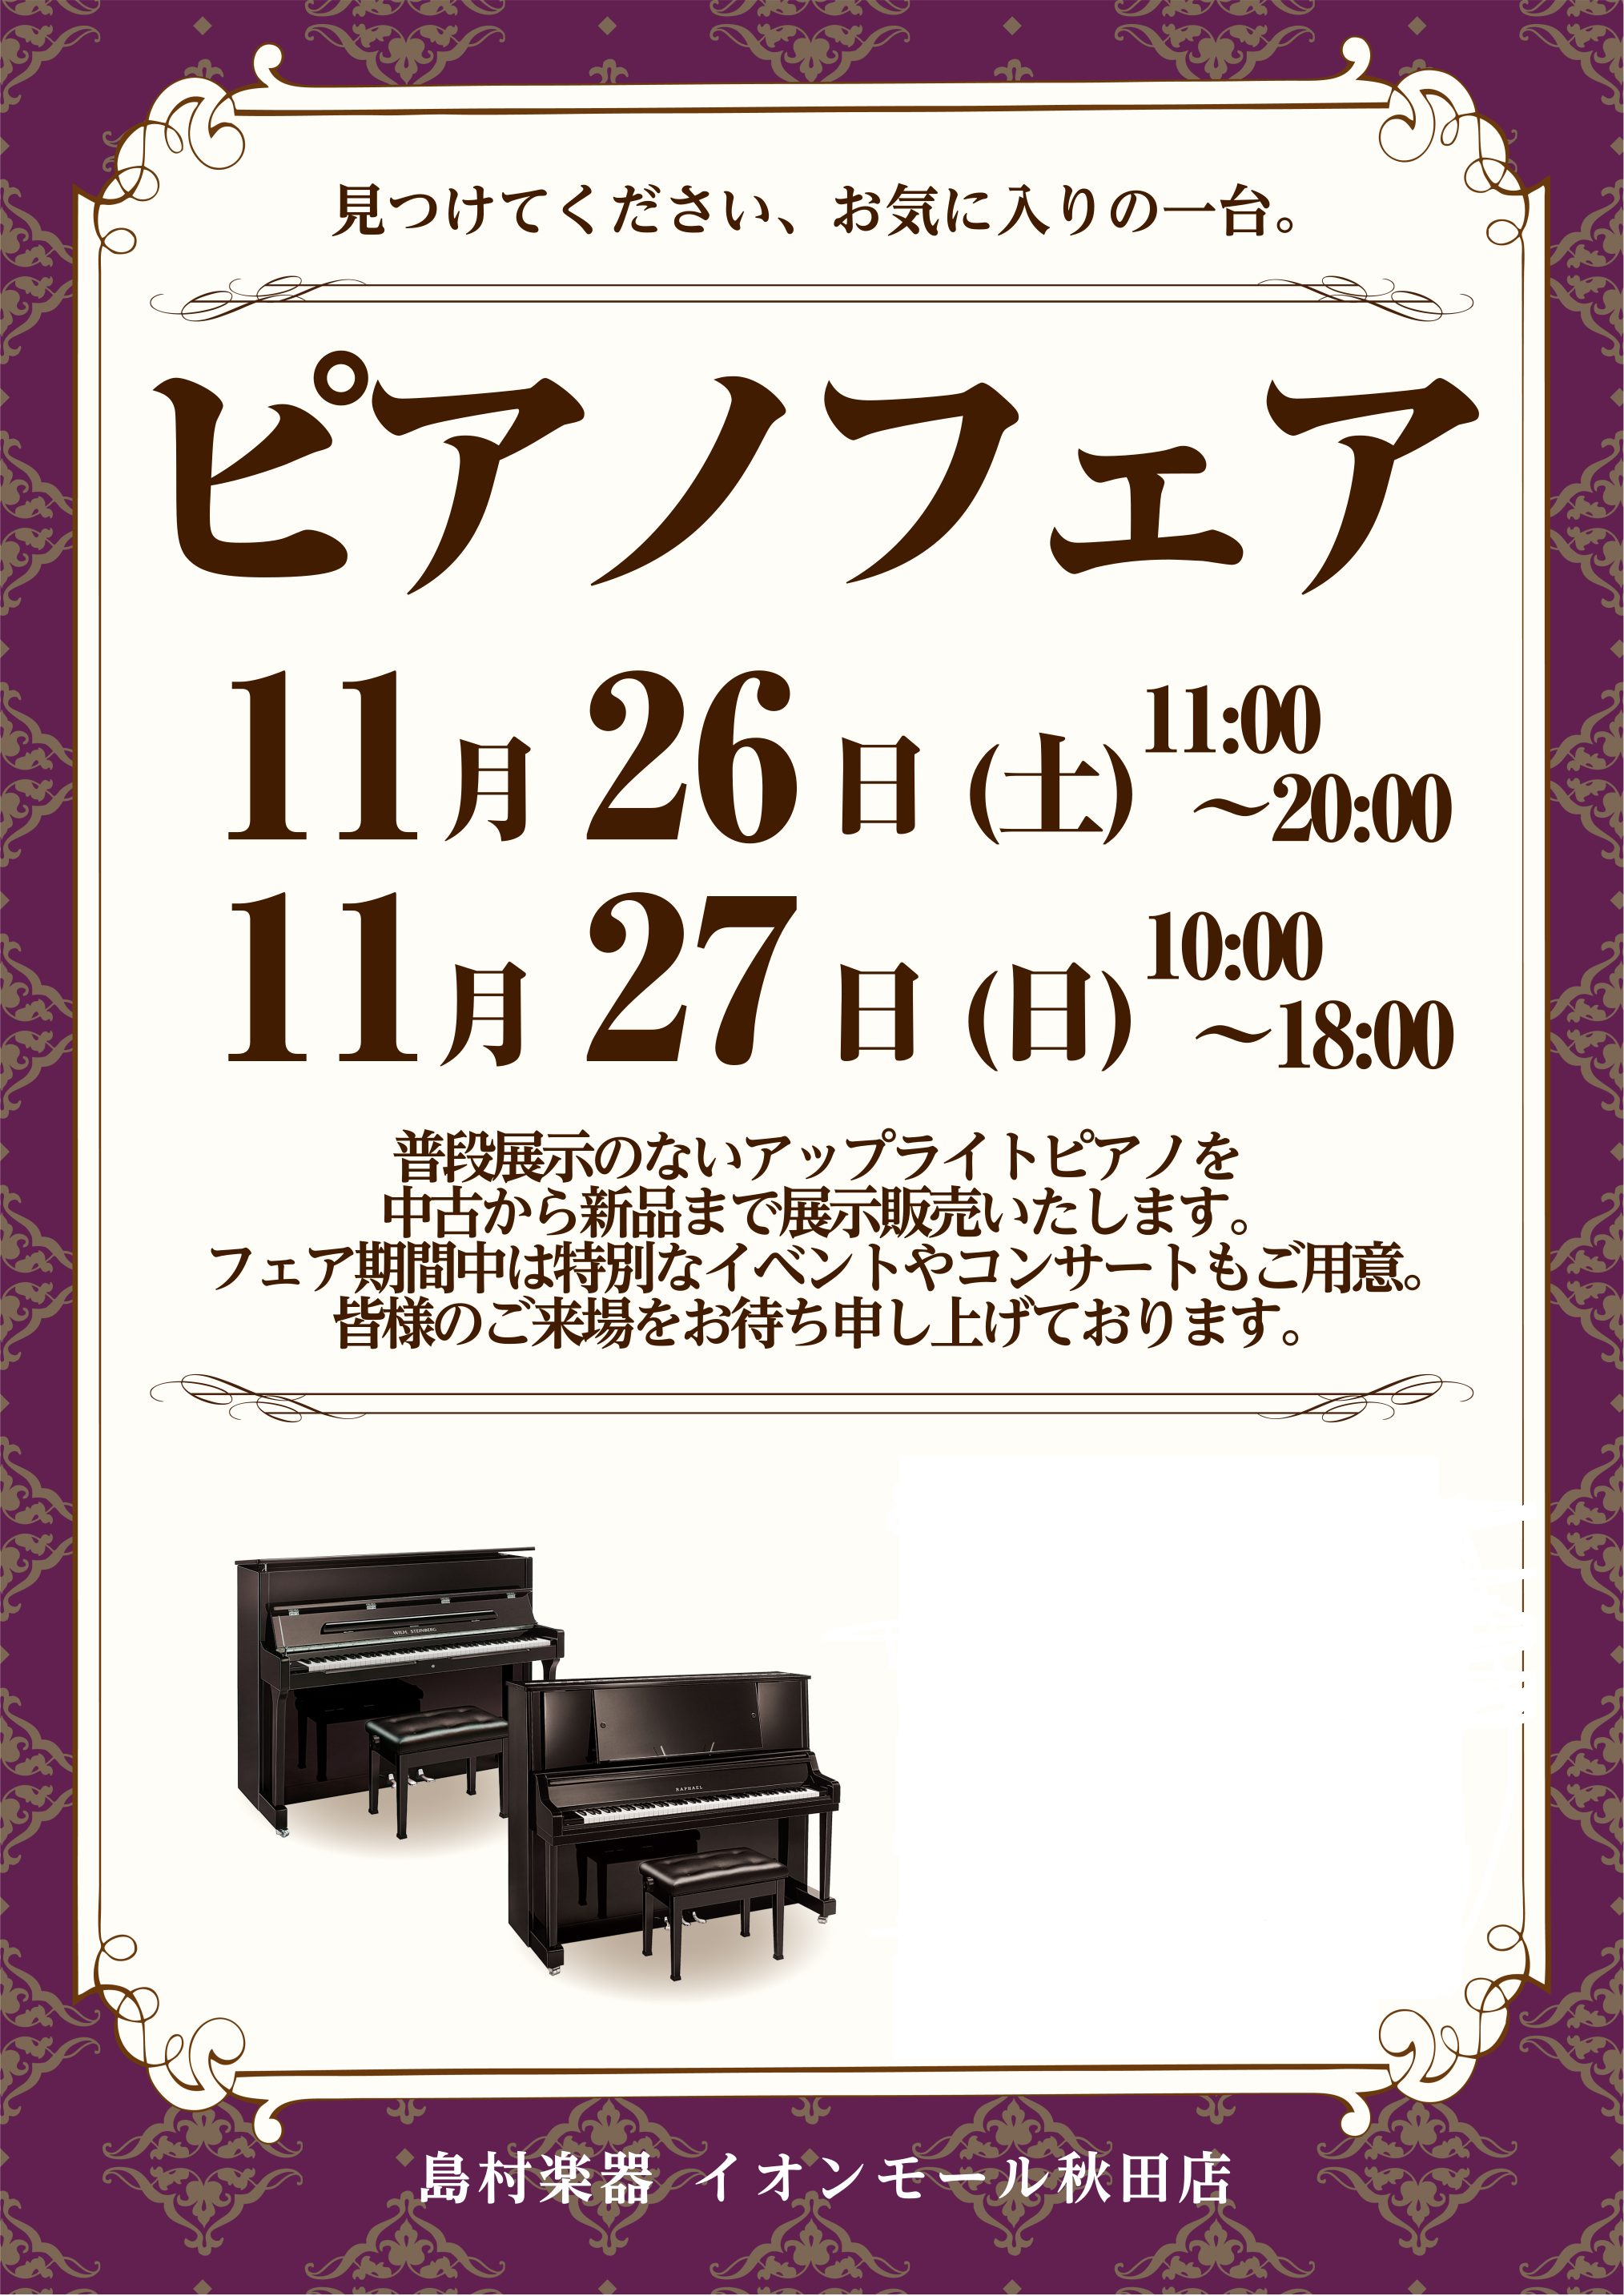 11/26(土)・11/27(日)の期間、ピアノフェアを開催いたします。 ピアノの展示だけでなくイベントも開催予定です。 情報は随時更新いたします。